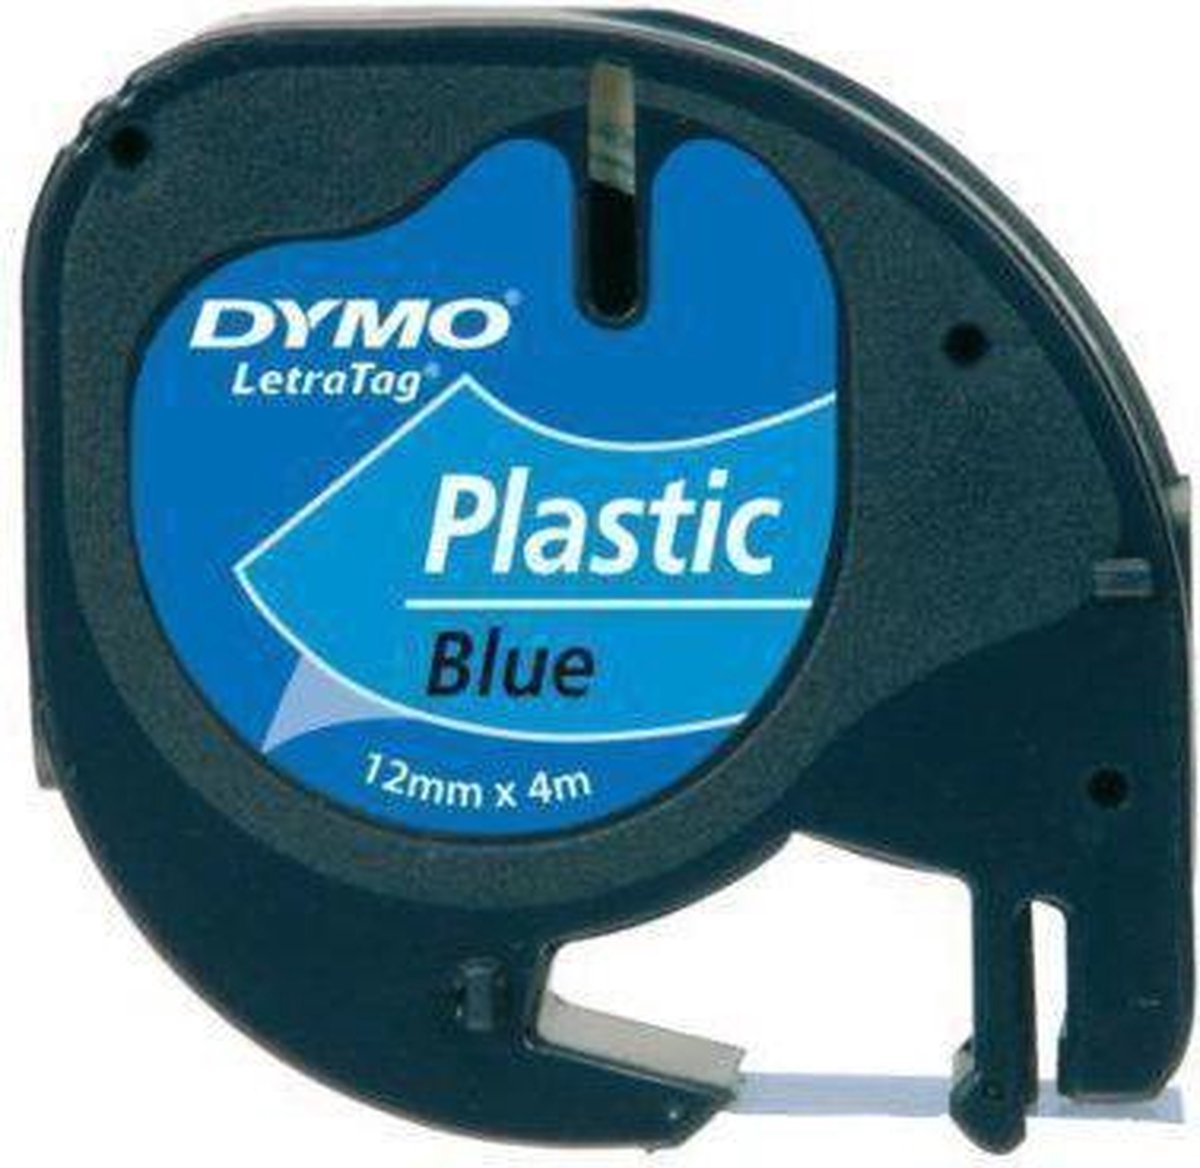 Dymo Lettertape Plastic - Zwart/Blauw - 12 mm x 4m - Tape